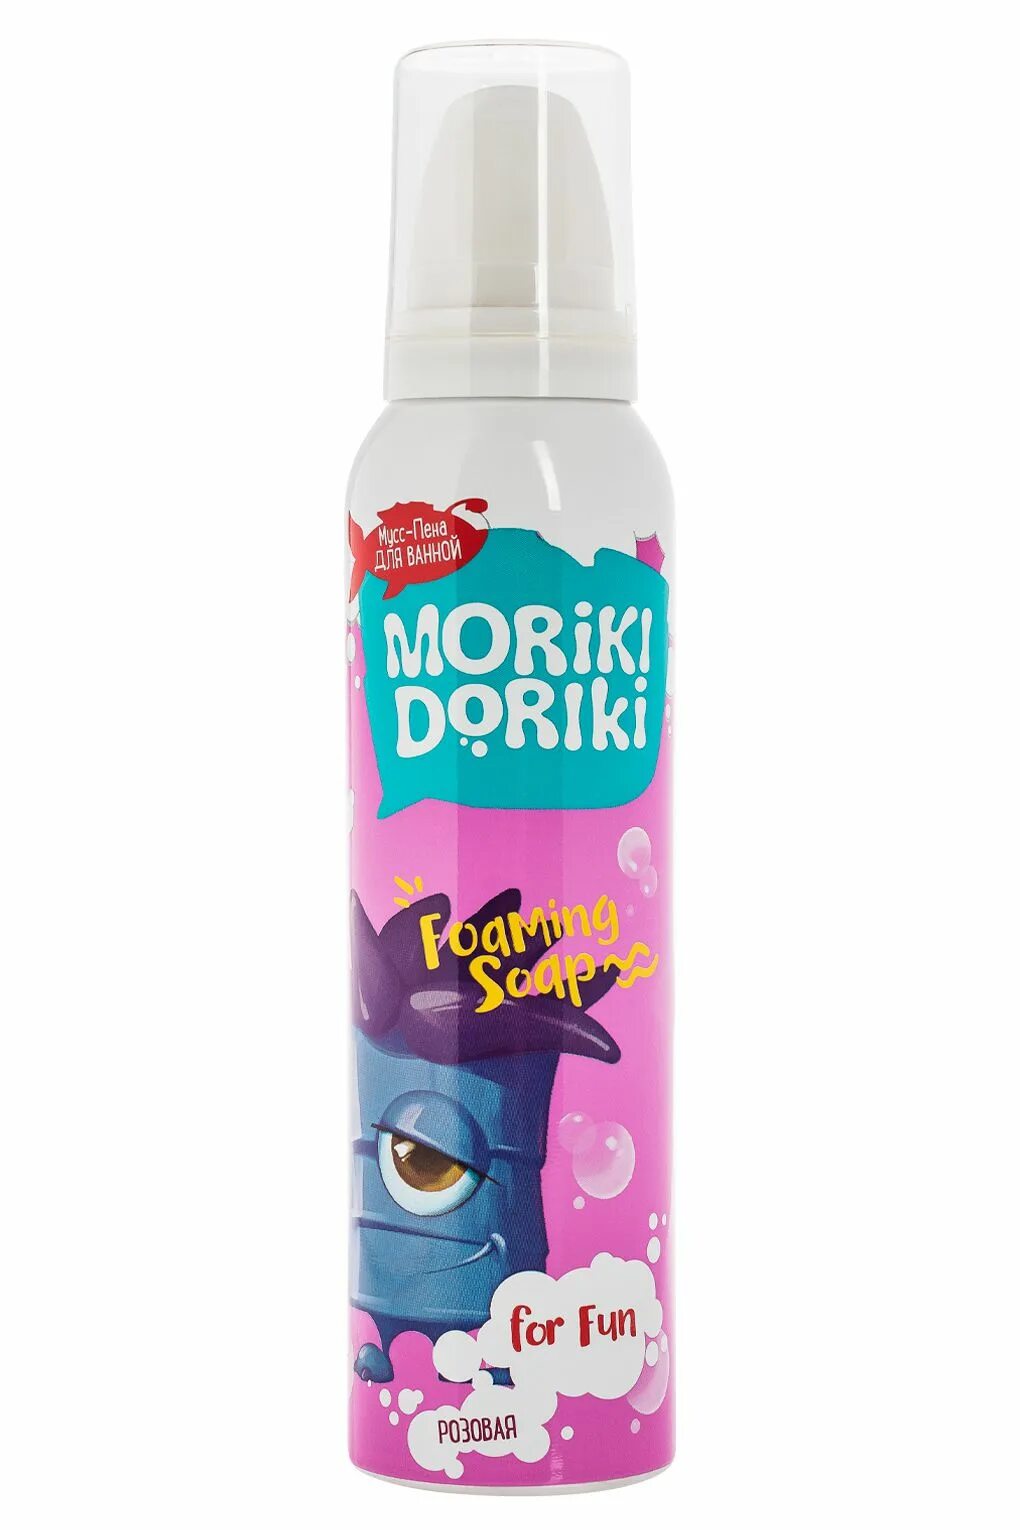 Морики дорики косметика купить. Moriki Doriki. Moriki Doriki пена для ванны. Мусс пена Морики Дорики. Морики Дорики мусс пена для ванны.